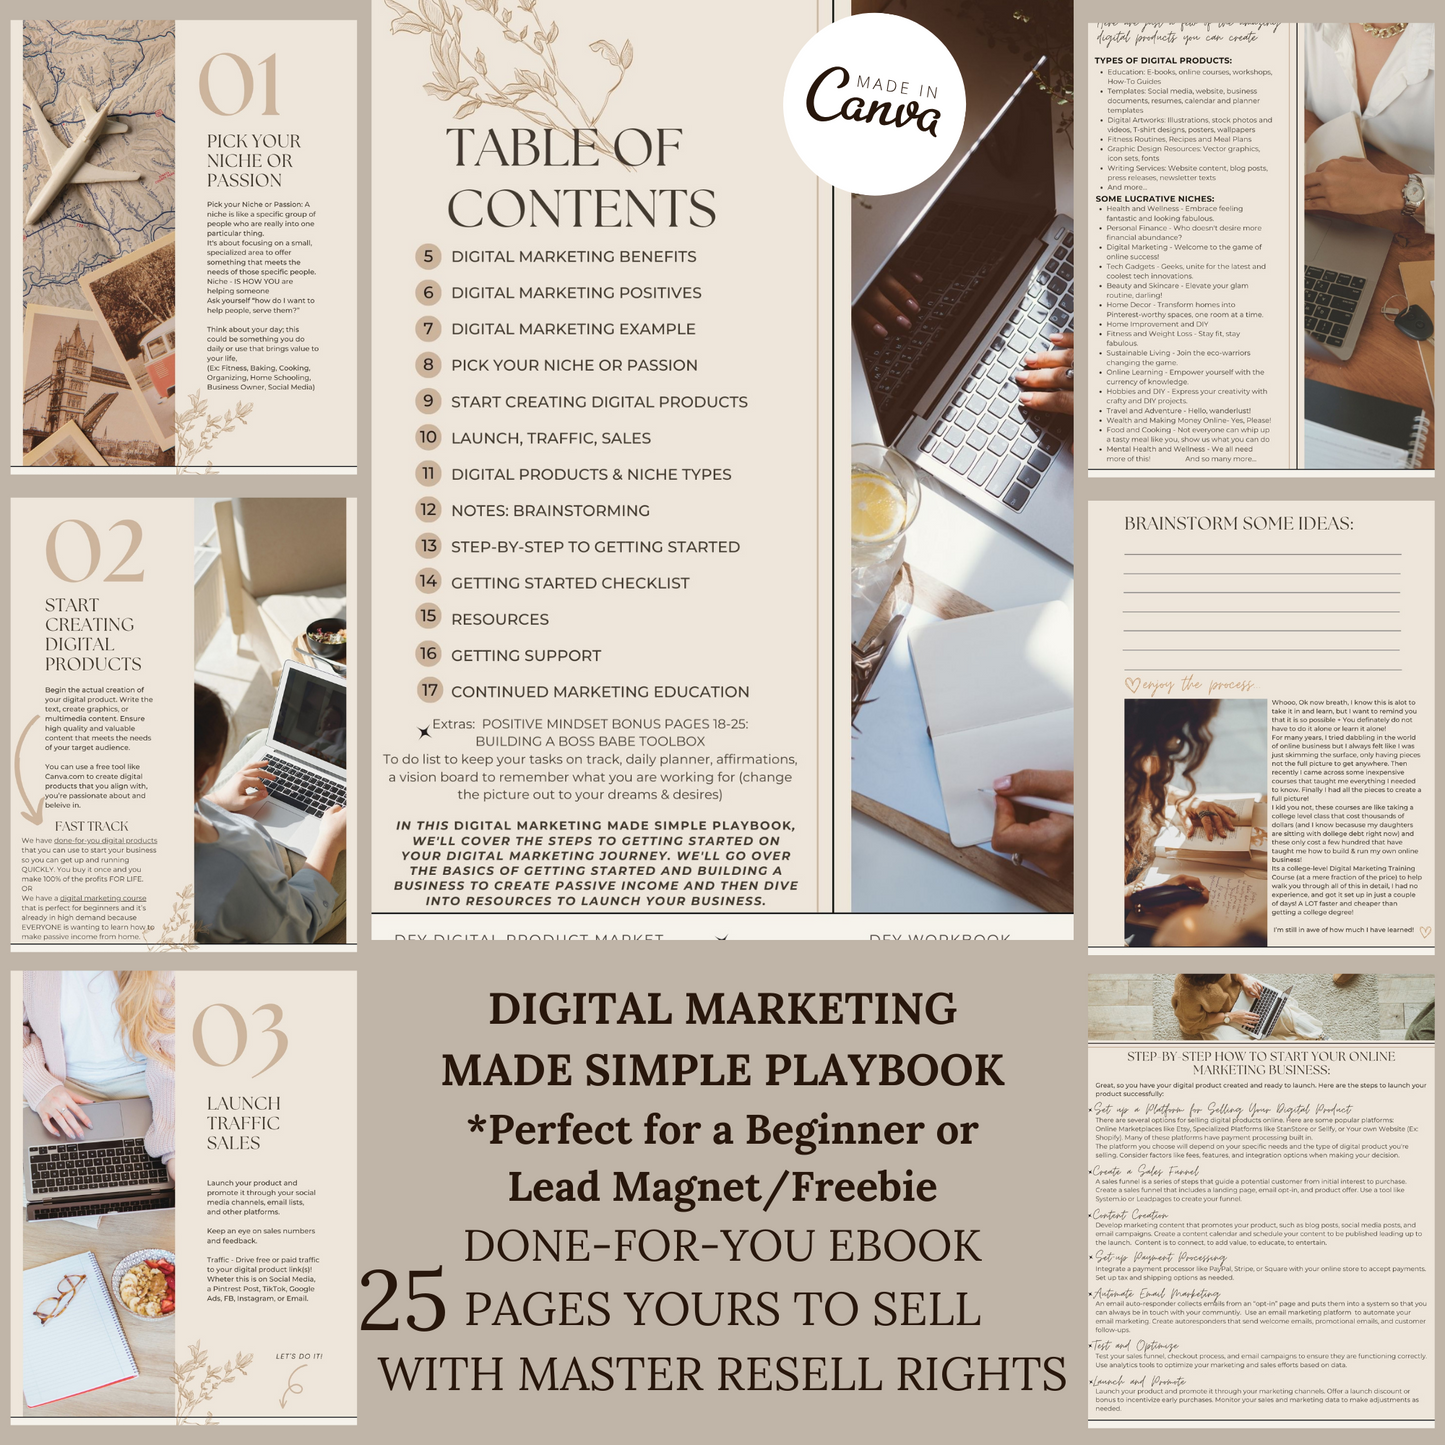 Digital Marketing Made Simple Playbook -  Beginners eBook/Lead Magnet